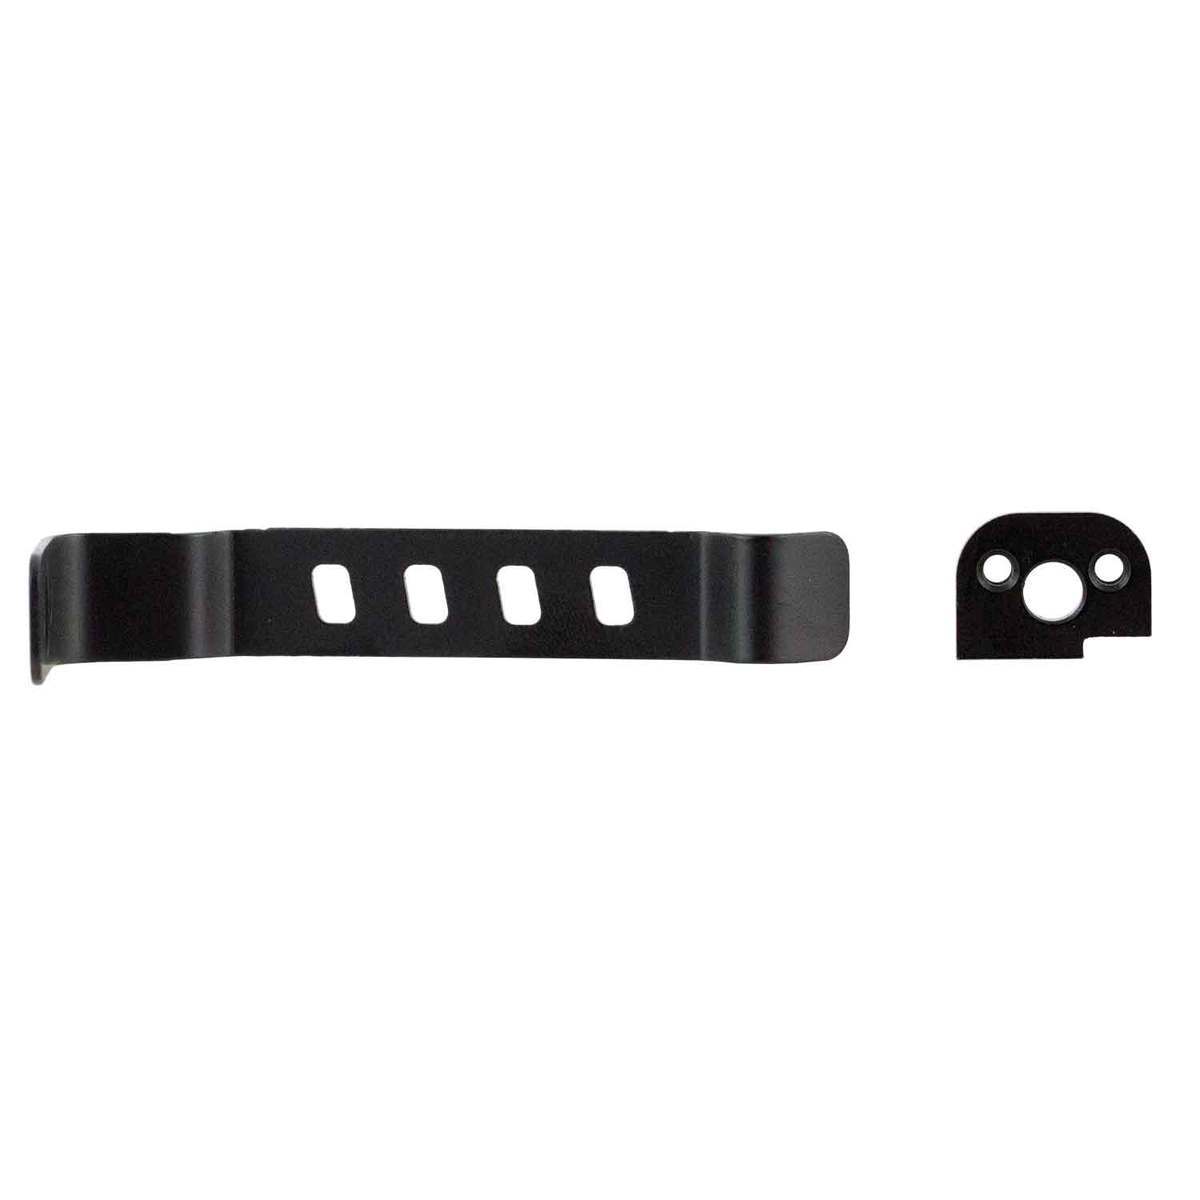 Details about   Techna Clip XDBA Gun Belt Clip Ambidextrous fits Springfield XDs